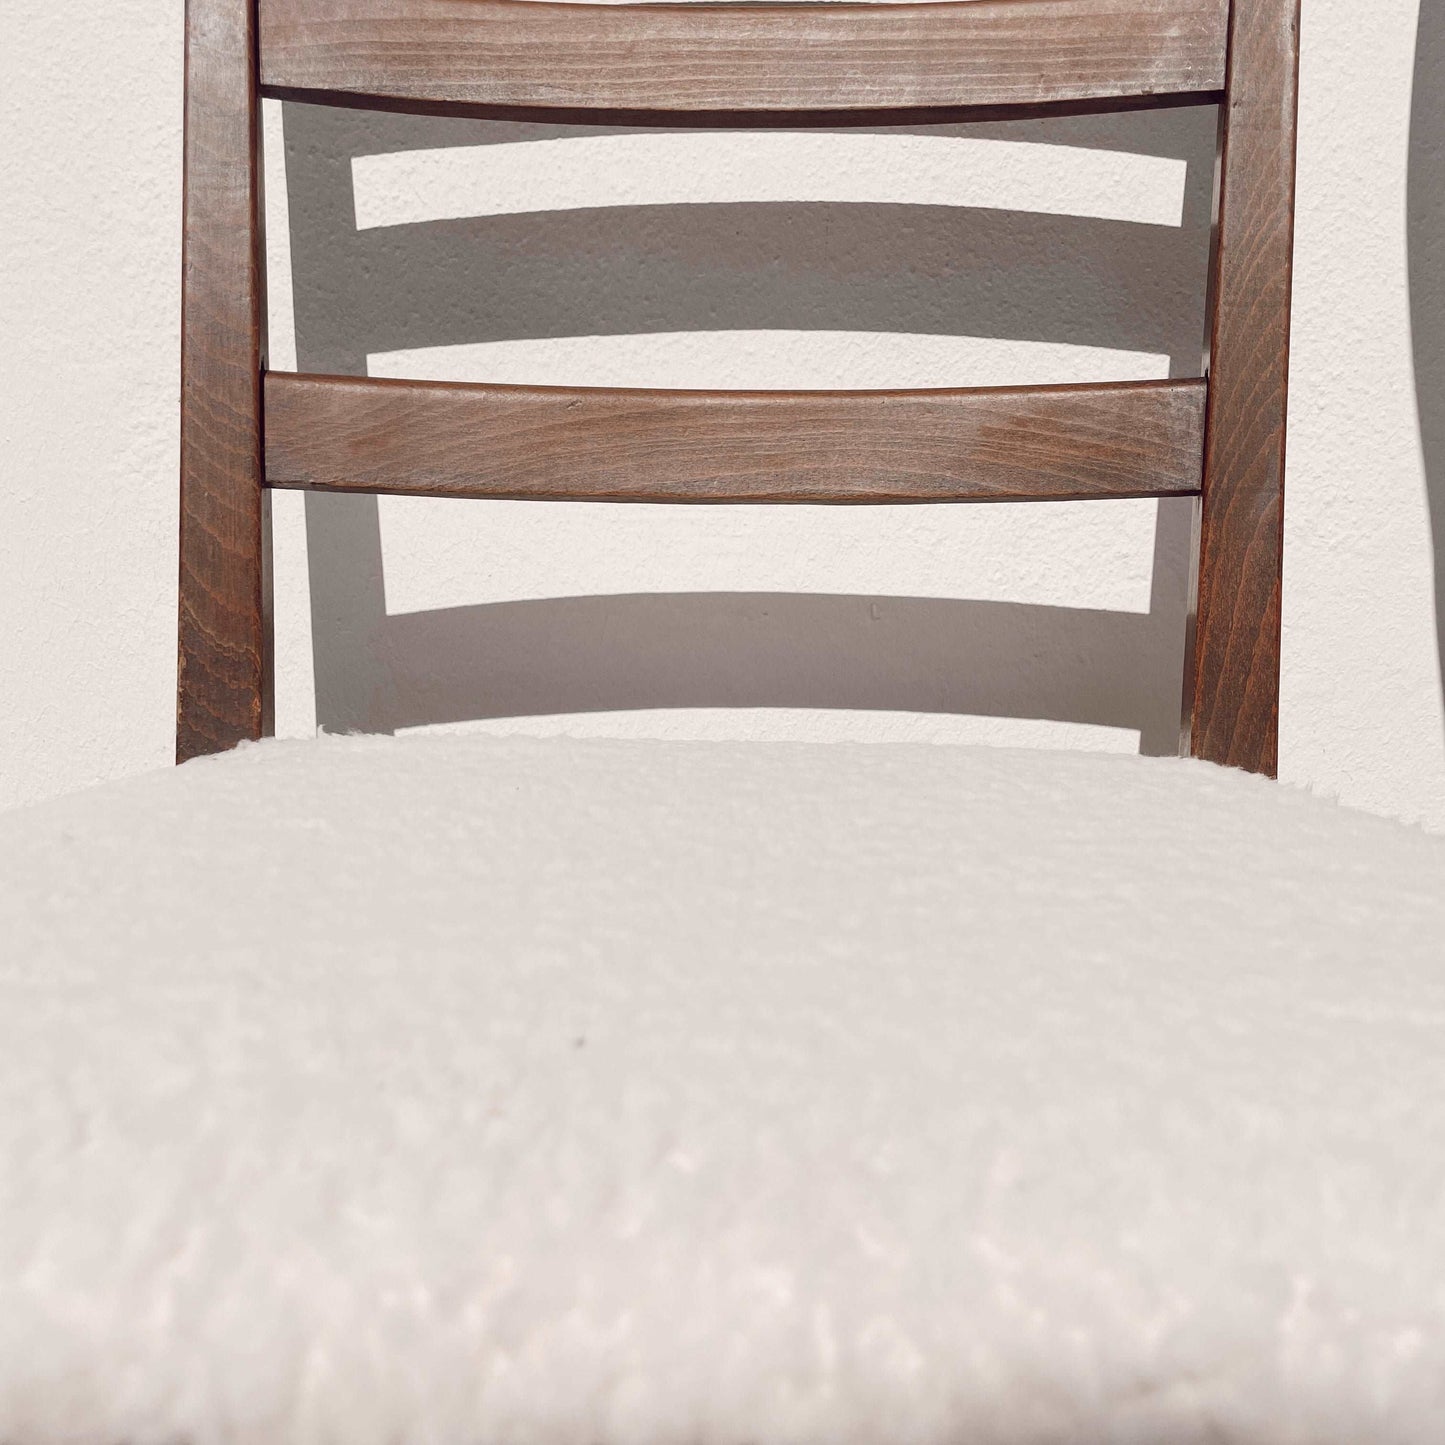 Chaise vintage bois et tissu bouclette esprit scandinave